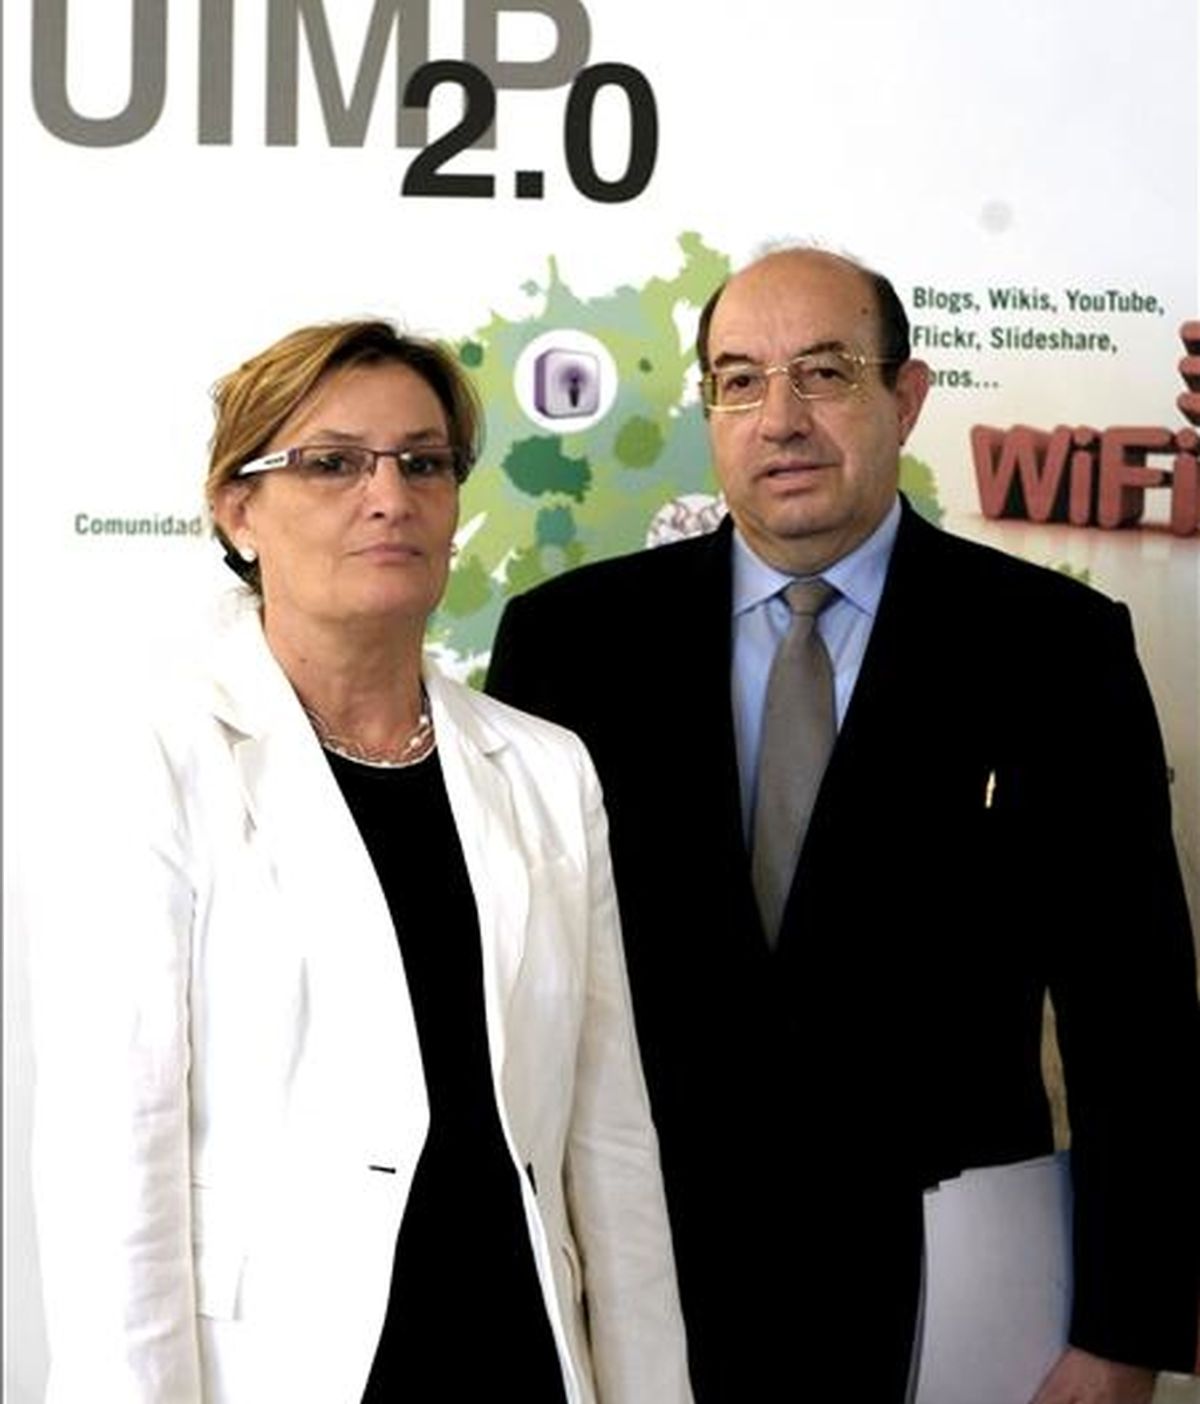 Imagen de agosto de 2008 en la que aparece el rector de la Universidad Internacional Menéndez Pelayo, Salvador Ordóñez momentos antes de la presentación la evaluación del proyecto UIMP 2.0 y su portal web.  EFE/Archivo